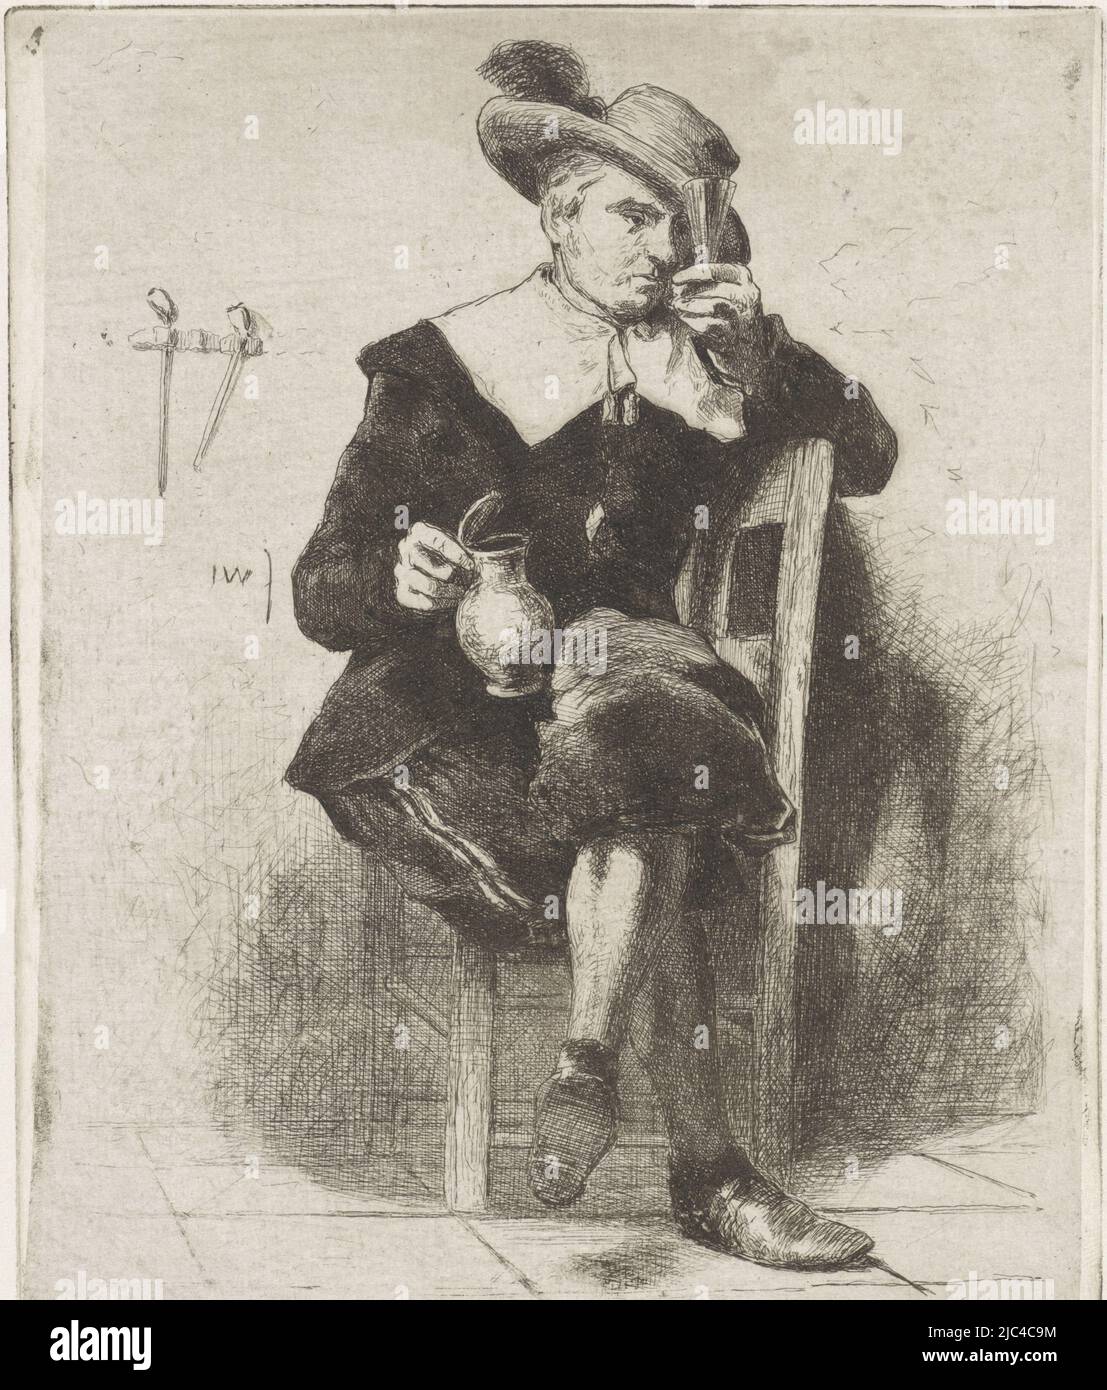 Sur une chaise se trouve un homme dans la robe du XVIIe siècle. Il porte un chapeau avec une plume sur sa tête. Dans ses mains, il tient un pichet et un verre. Sur le mur derrière lui, accrocher quelques pipes, homme avec pichet et verre sur une chaise, imprimeur: Jan Weissenbruch, (mentionné sur l'objet), la Haye, (éventuellement), 1837 - 1880, papier, gravure, h 148 mm × l 122 mm Banque D'Images